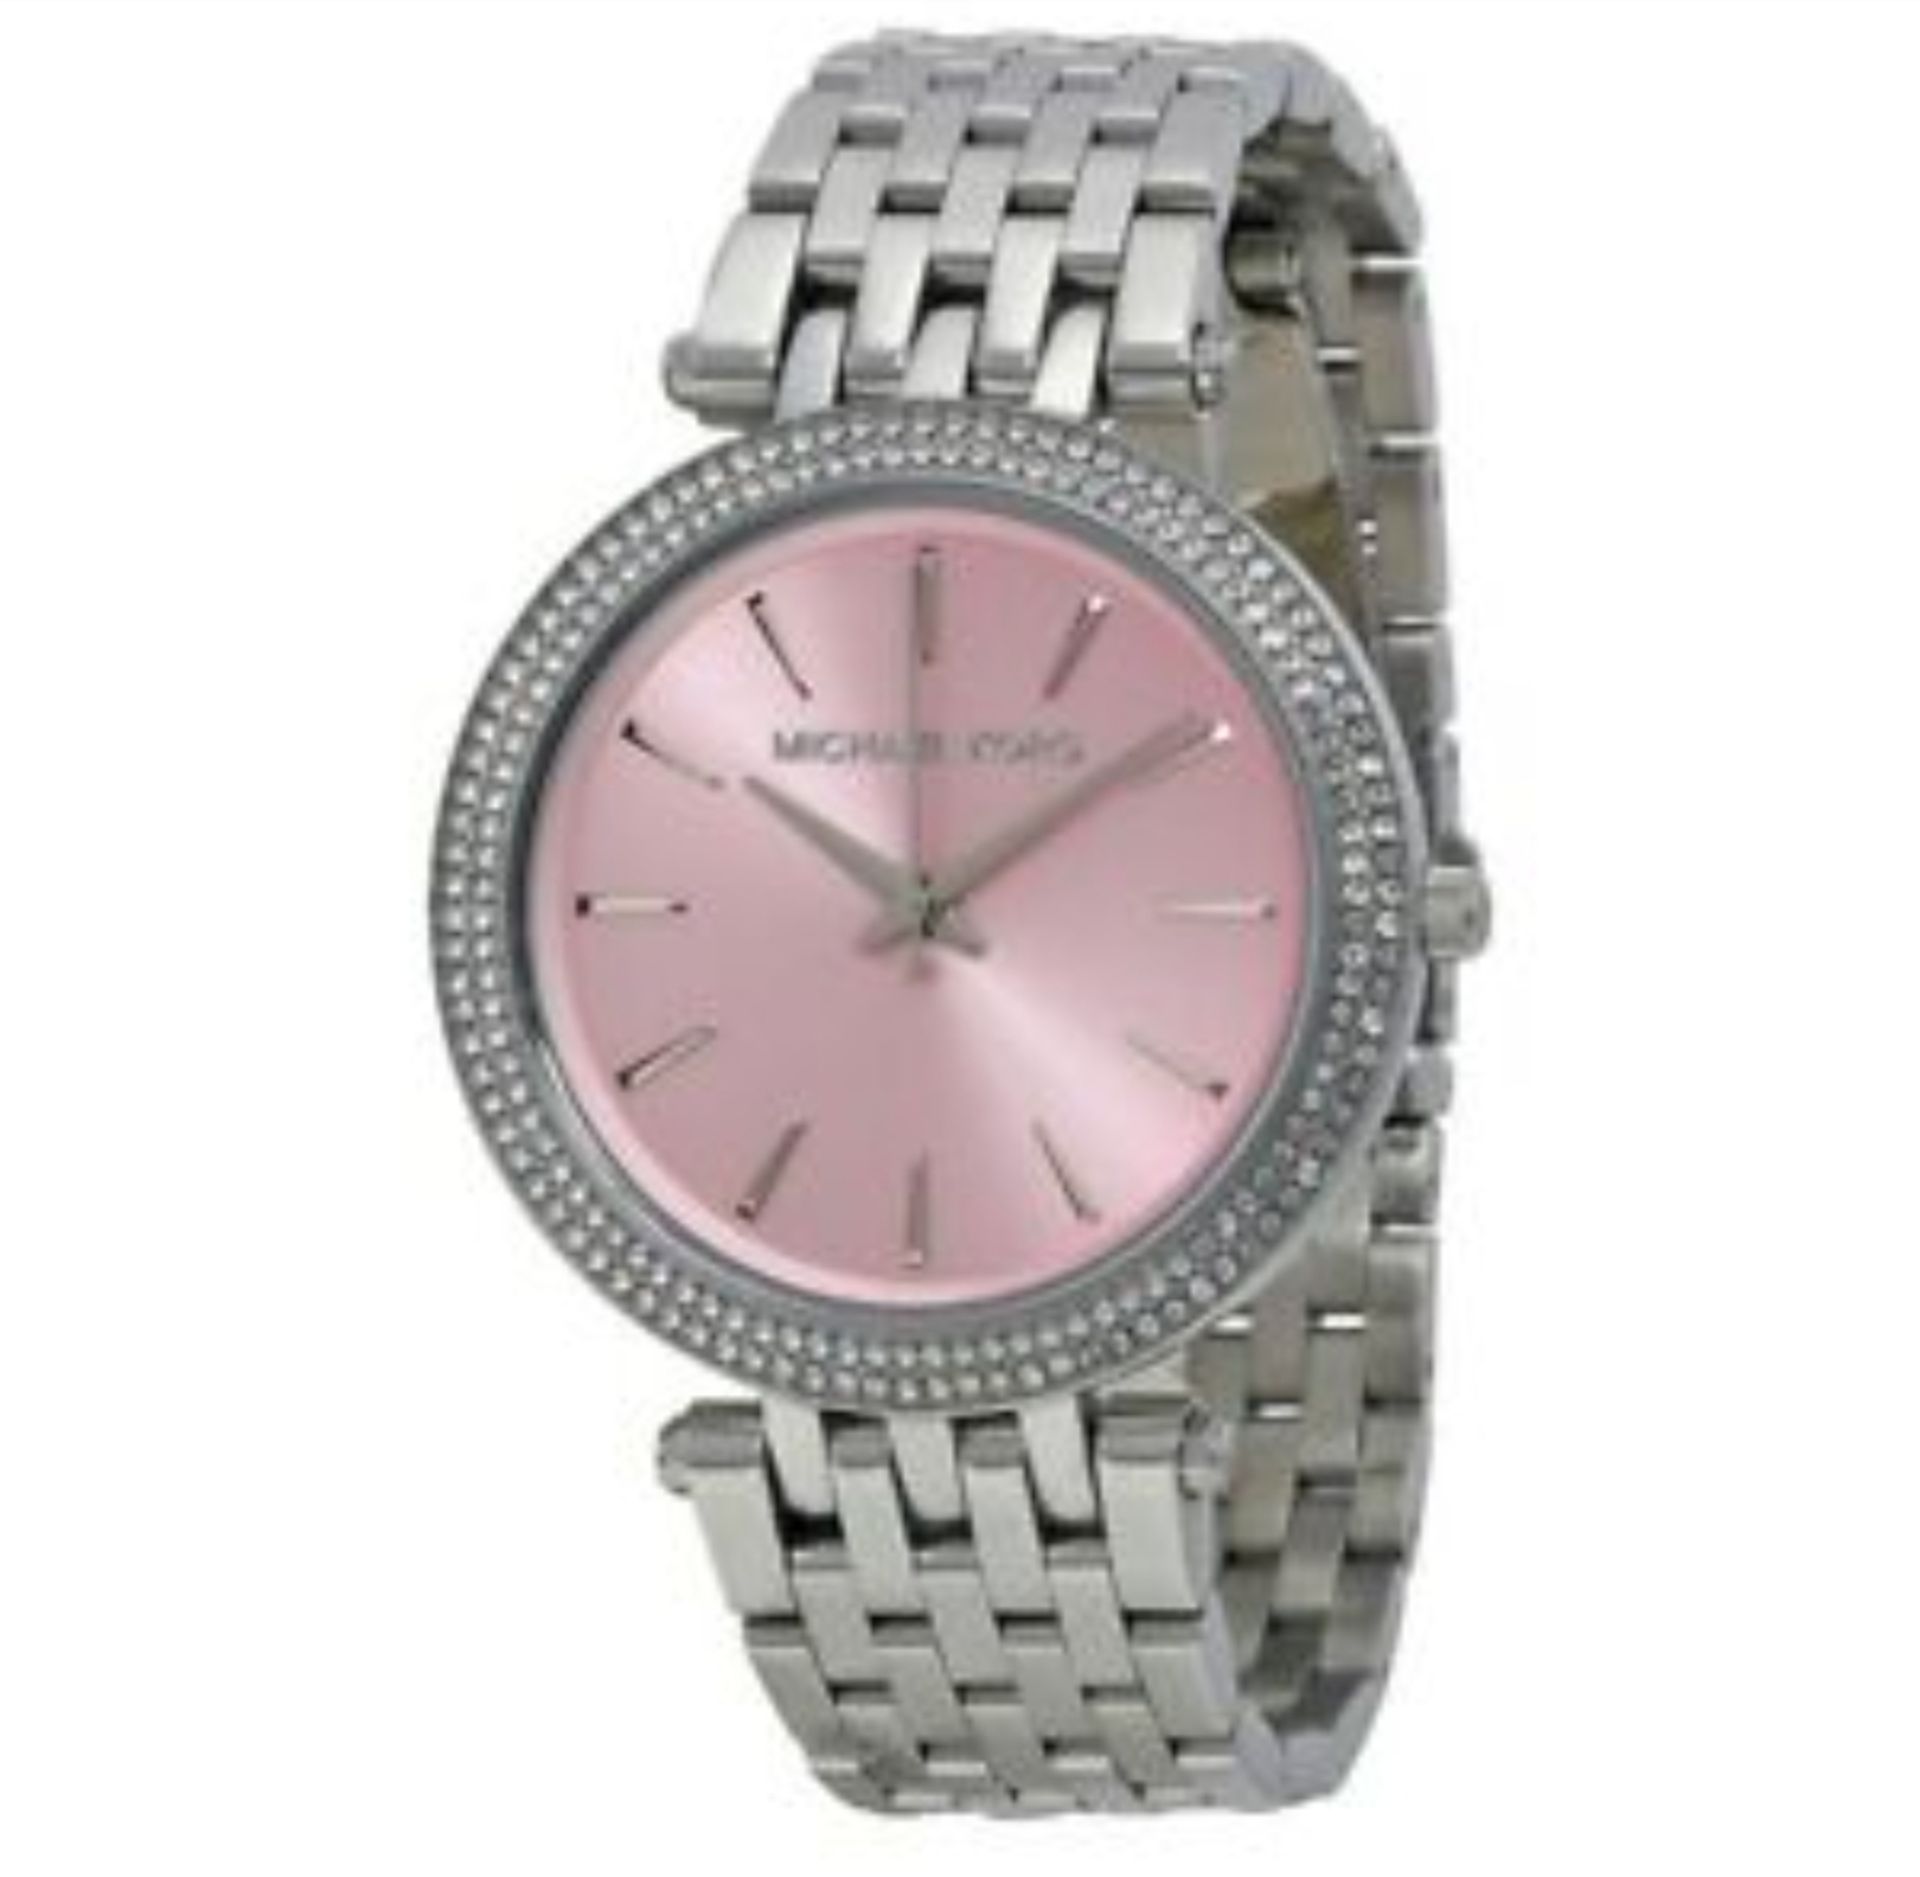 MICHAEL KORS MK3352 Darci Pink & Silver Stainless Steel Ladies Watch - Image 2 of 5